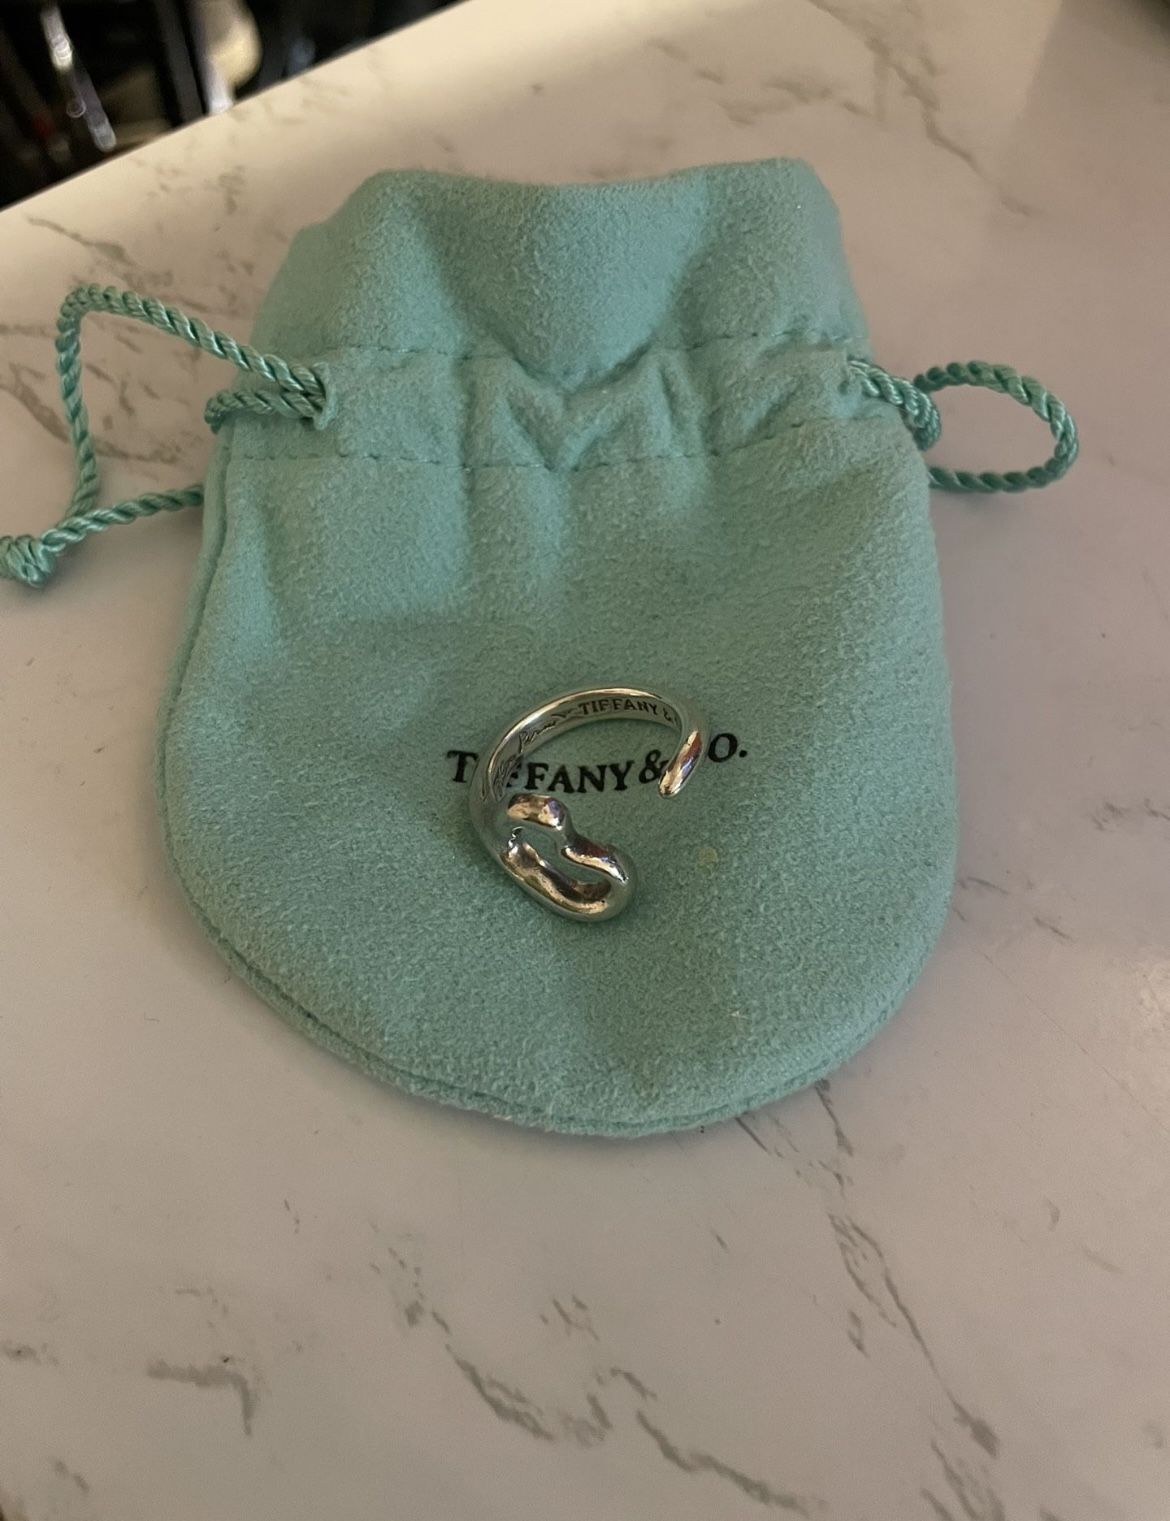 Tiffany’s Open Heart Ring 